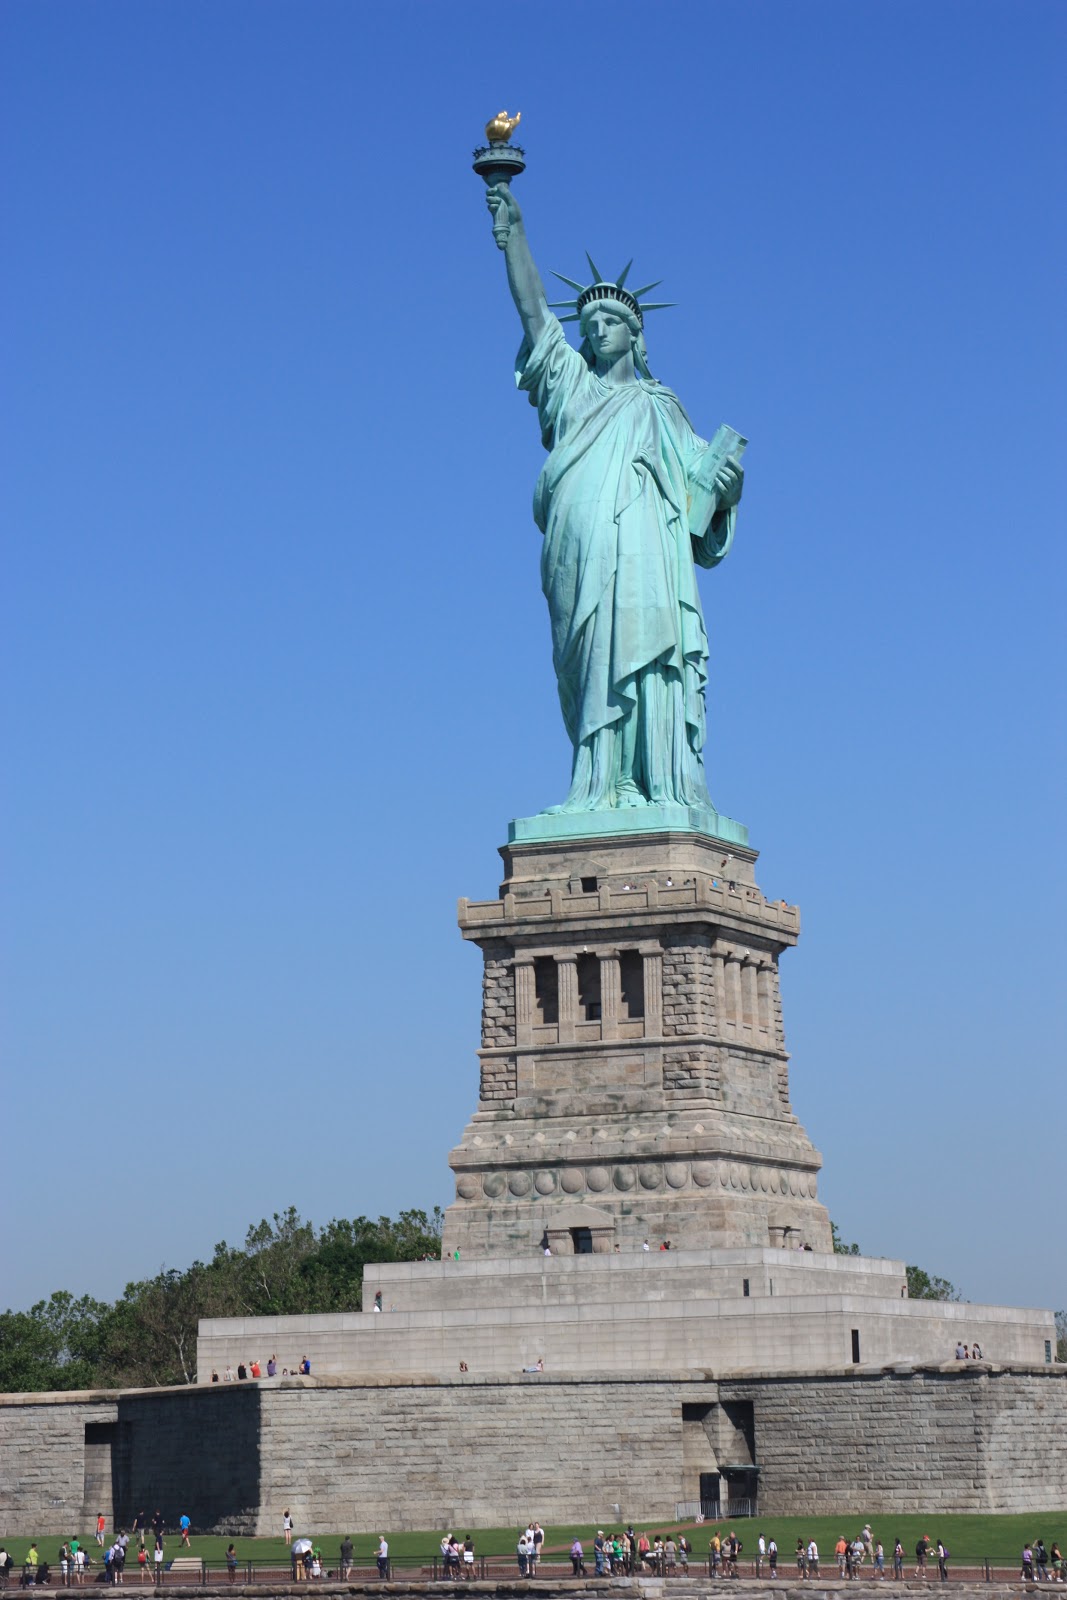 Flo a la bougeotte: Qui n'a jamais rêvé de voir la Statue de la Liberté
